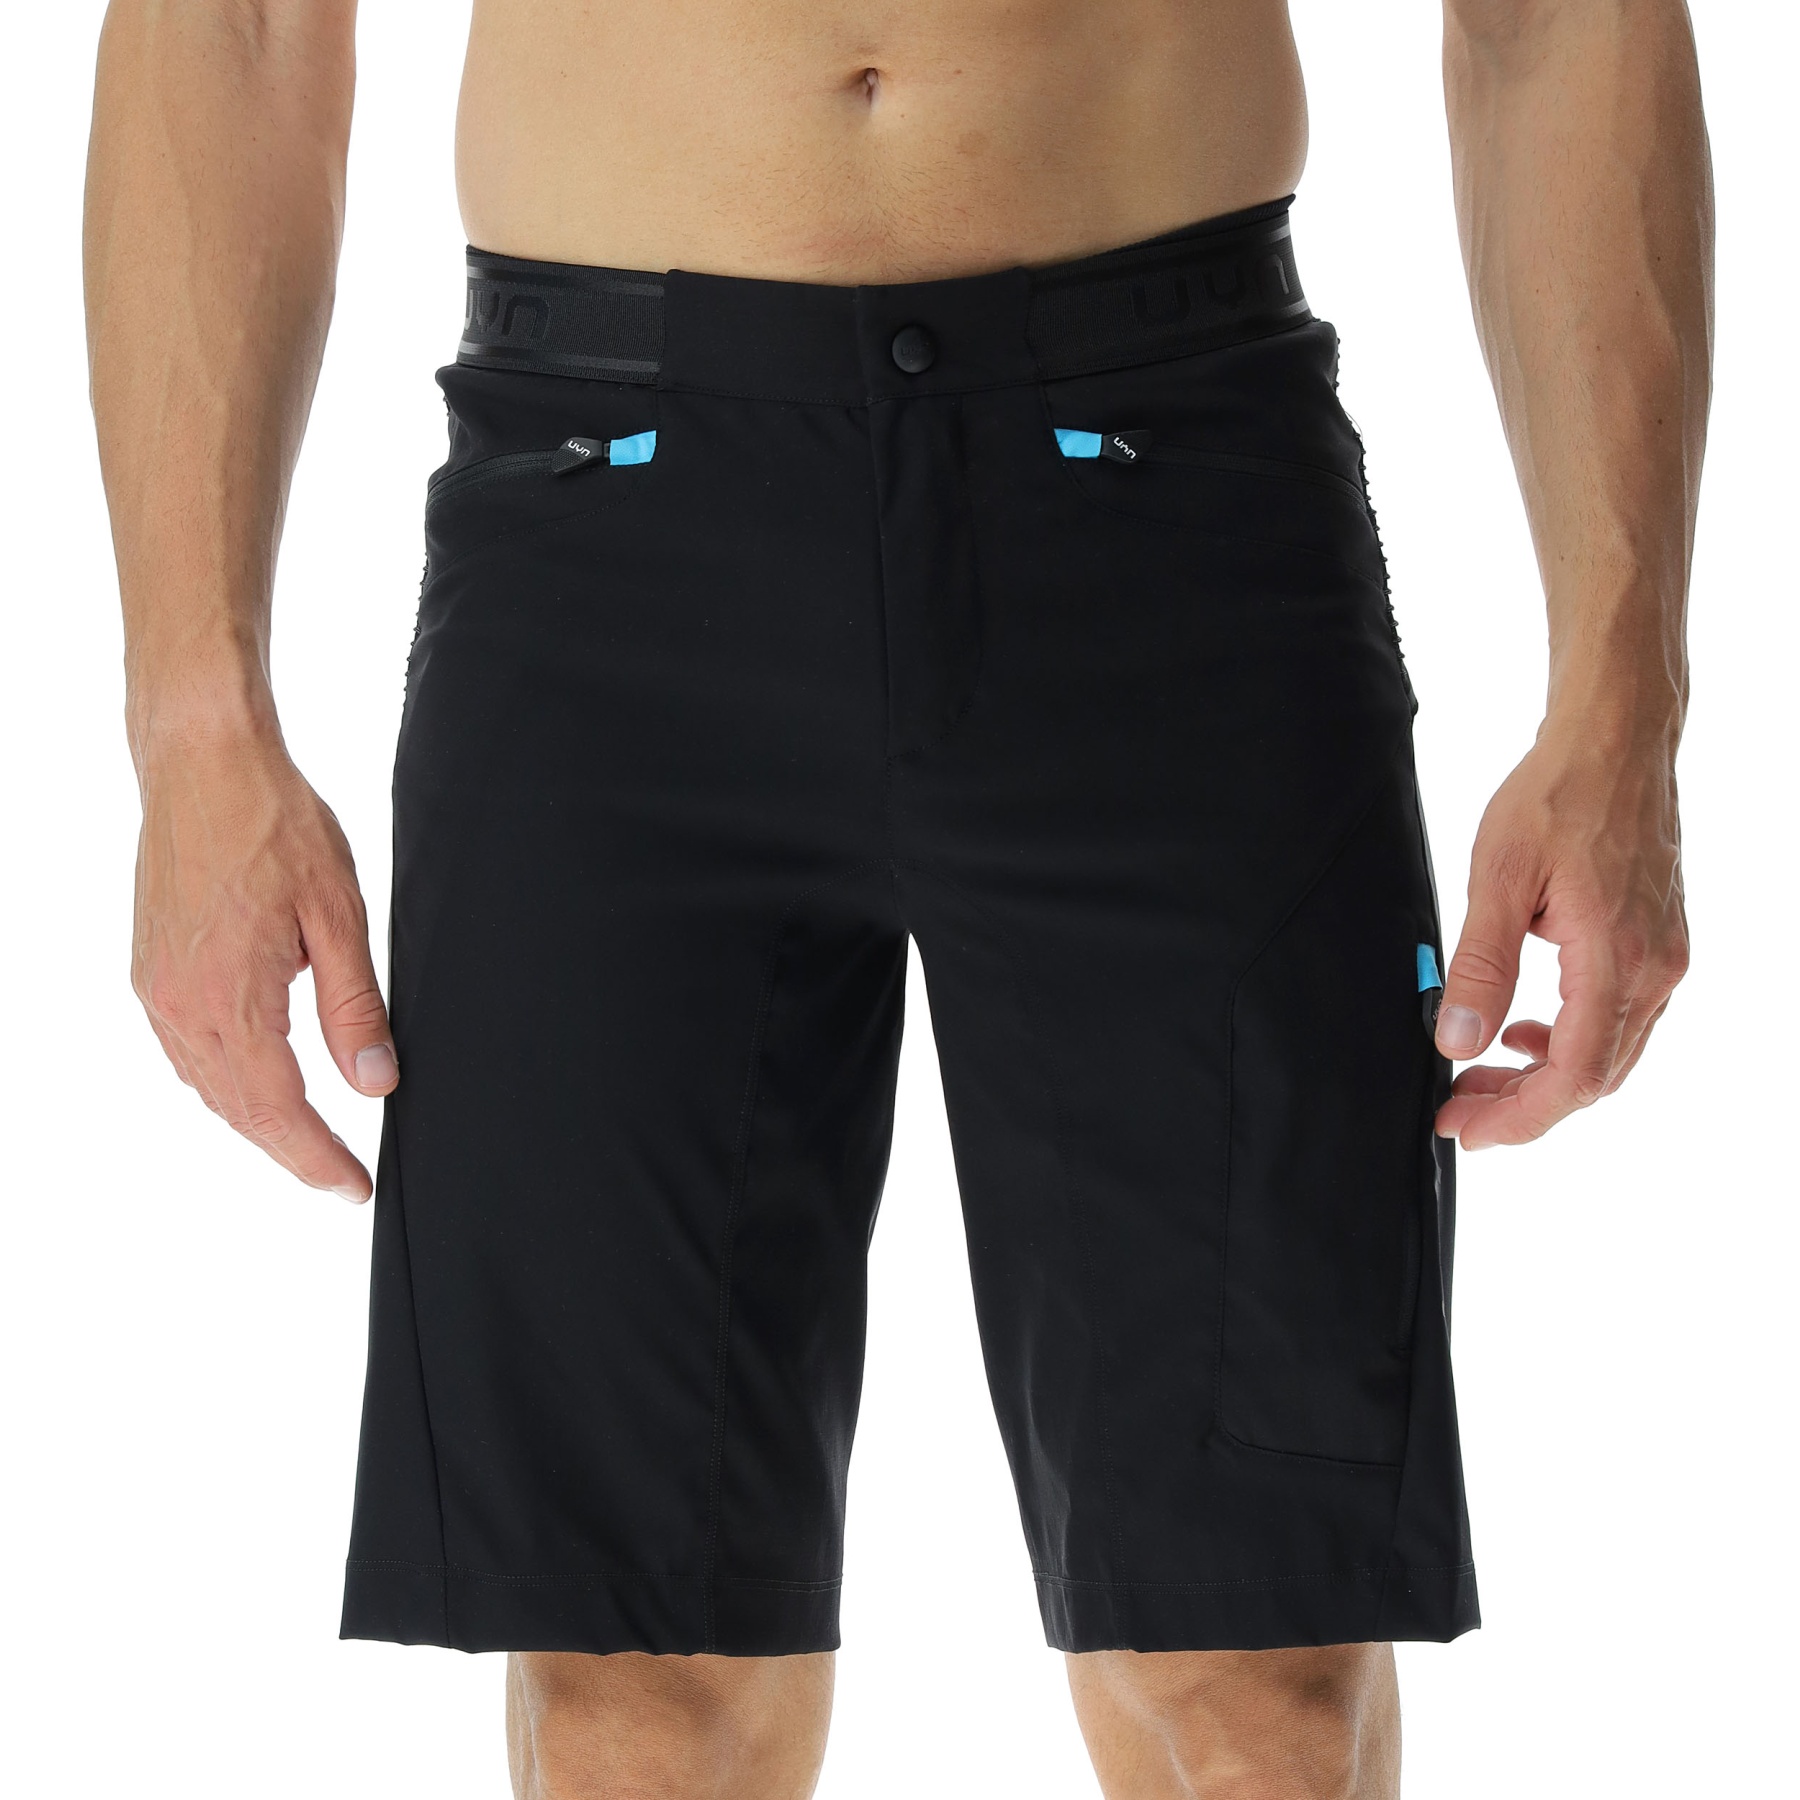 Produktbild von UYN Biking Trailblazer Shorts Herren - Black/Blue Danube